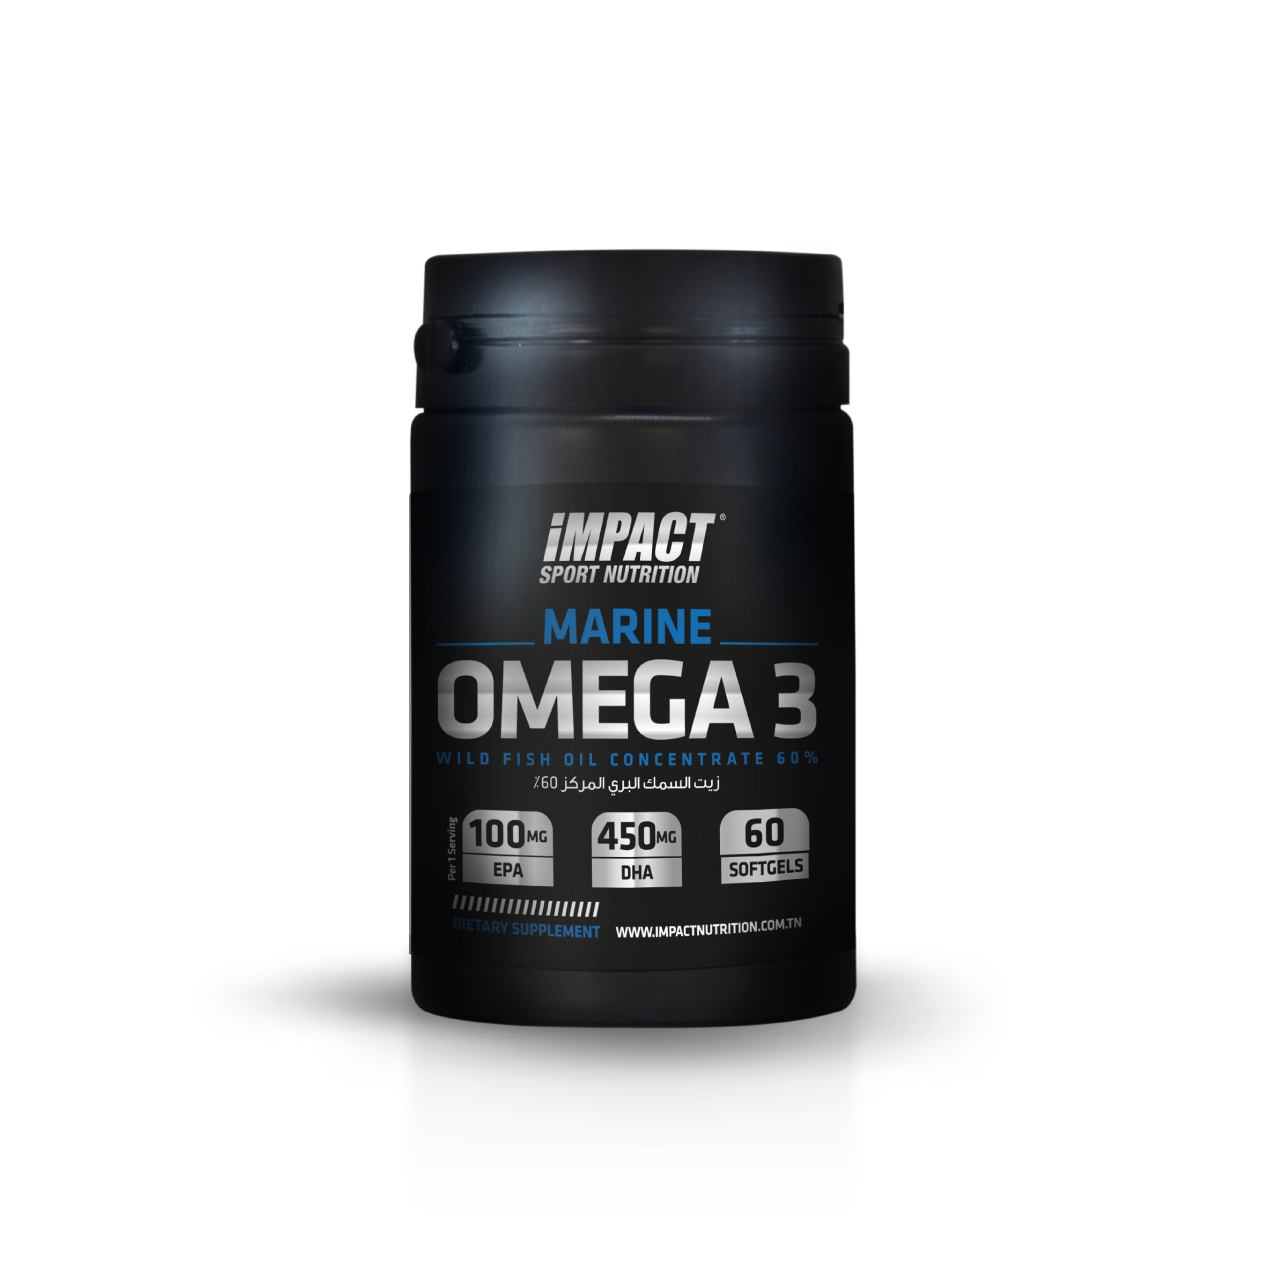 Marine Oméga 3 - Impact Sport Nutrition